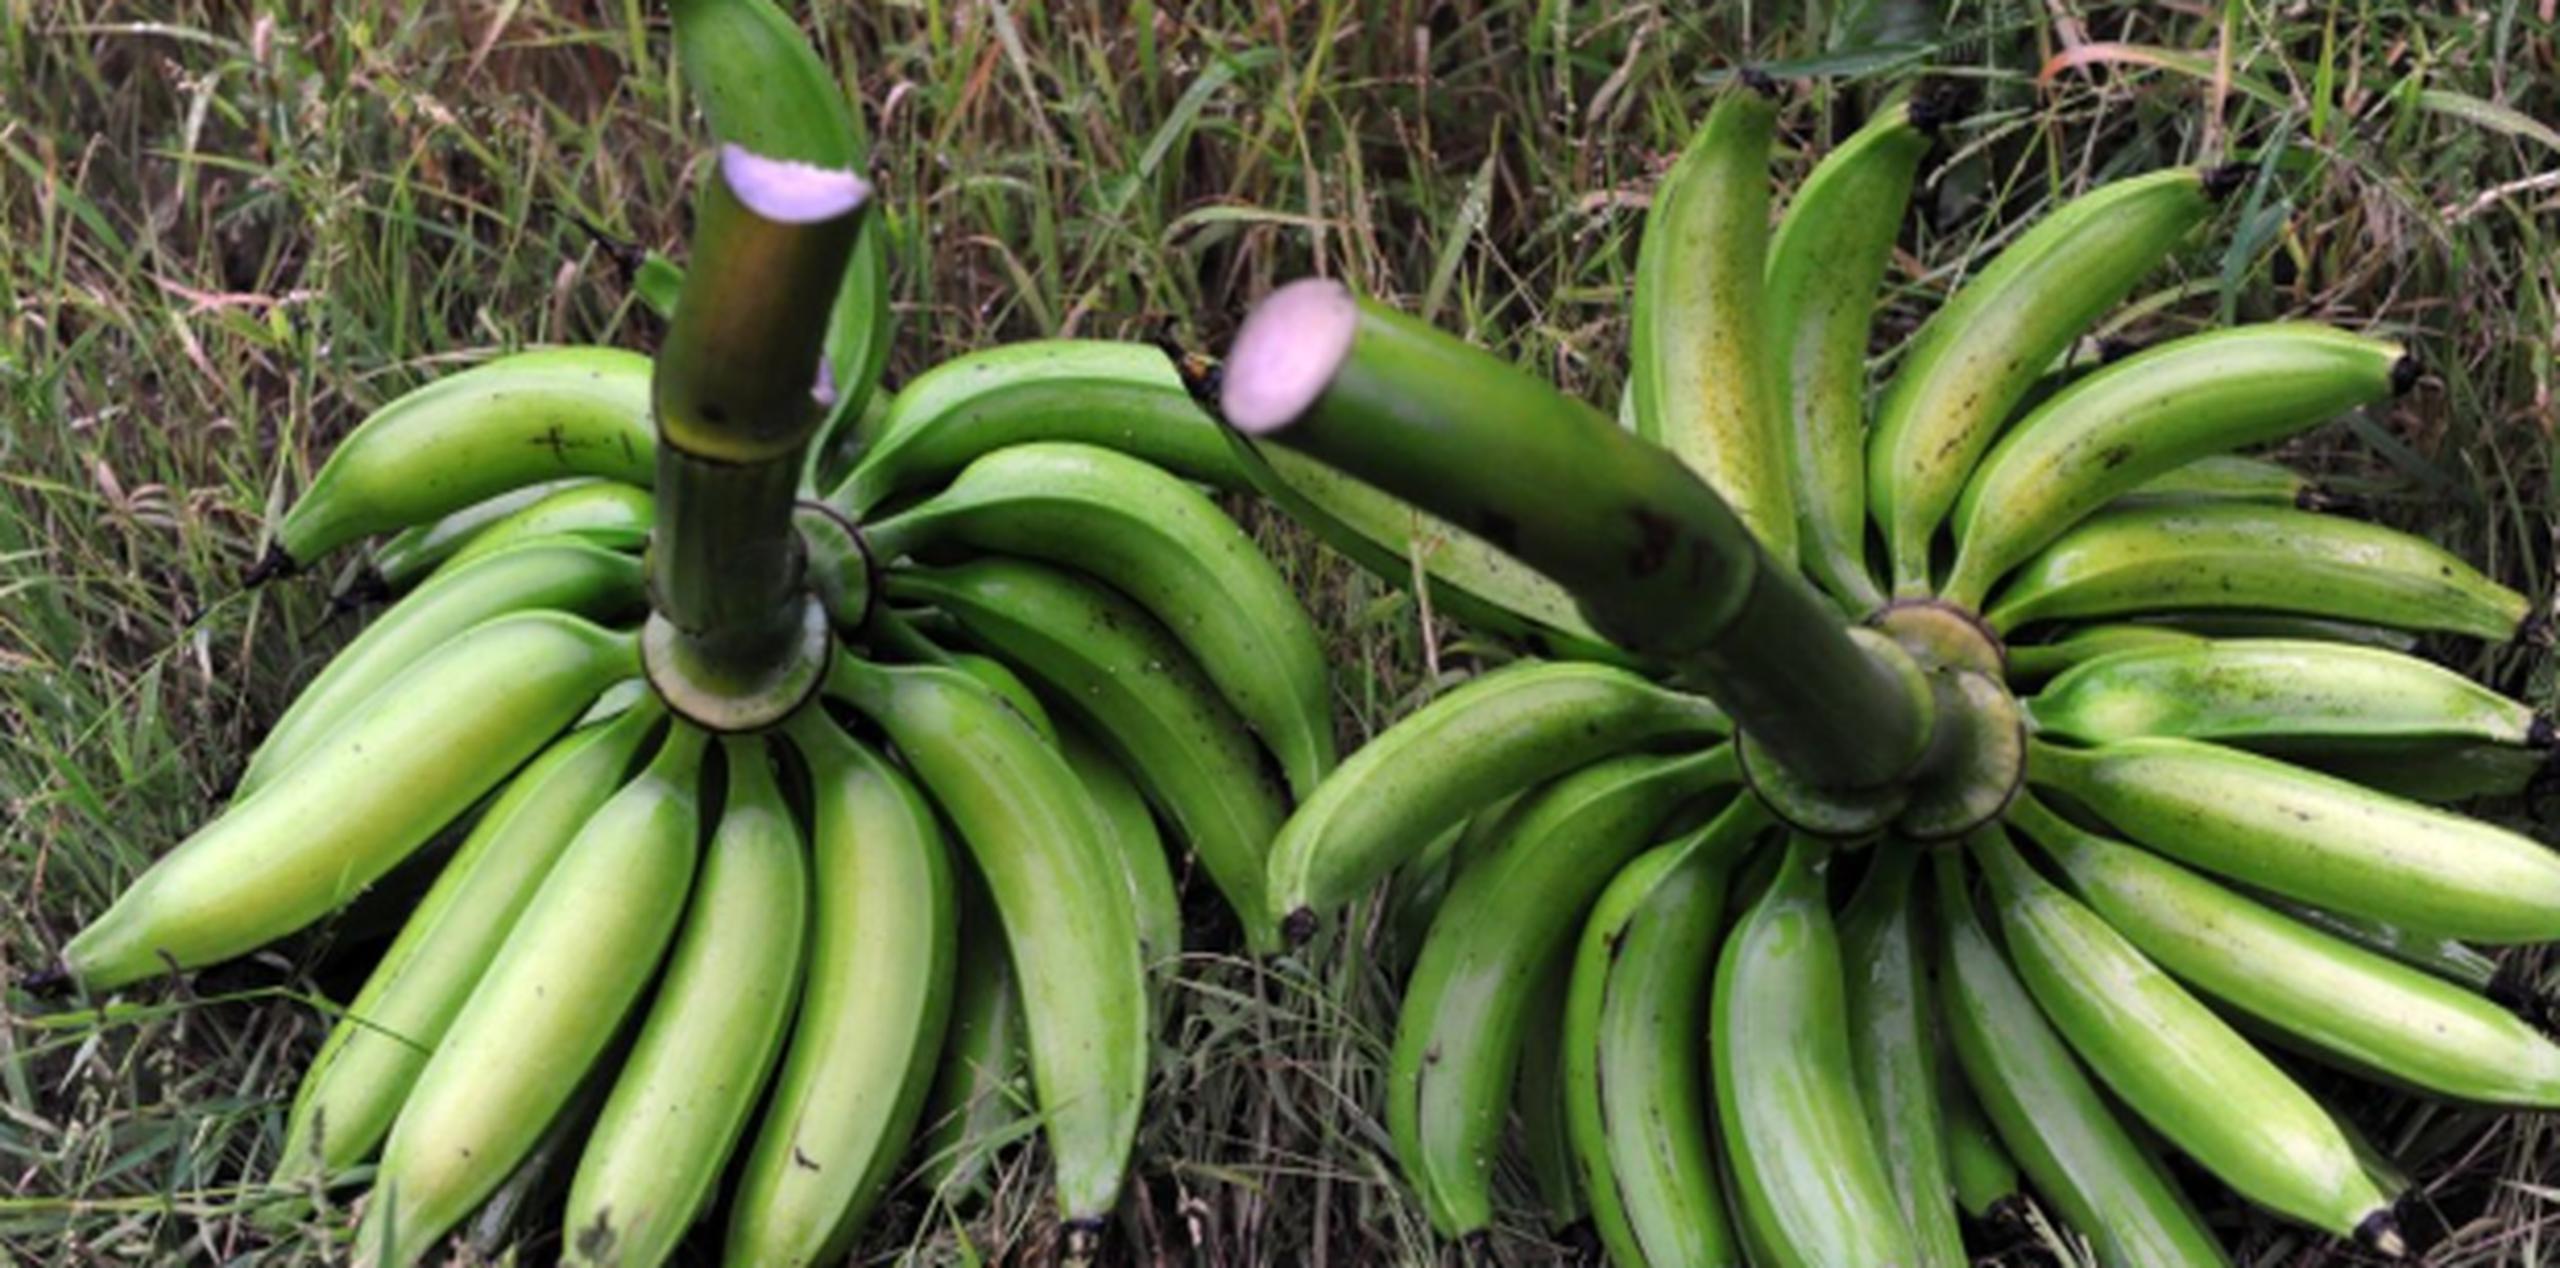 El titular de Agricultura dijo que semanalmente se importan 1,080 cajas de 60 libras de plátanos y guineos desde Costa Rica y Colombia. (Archivo)